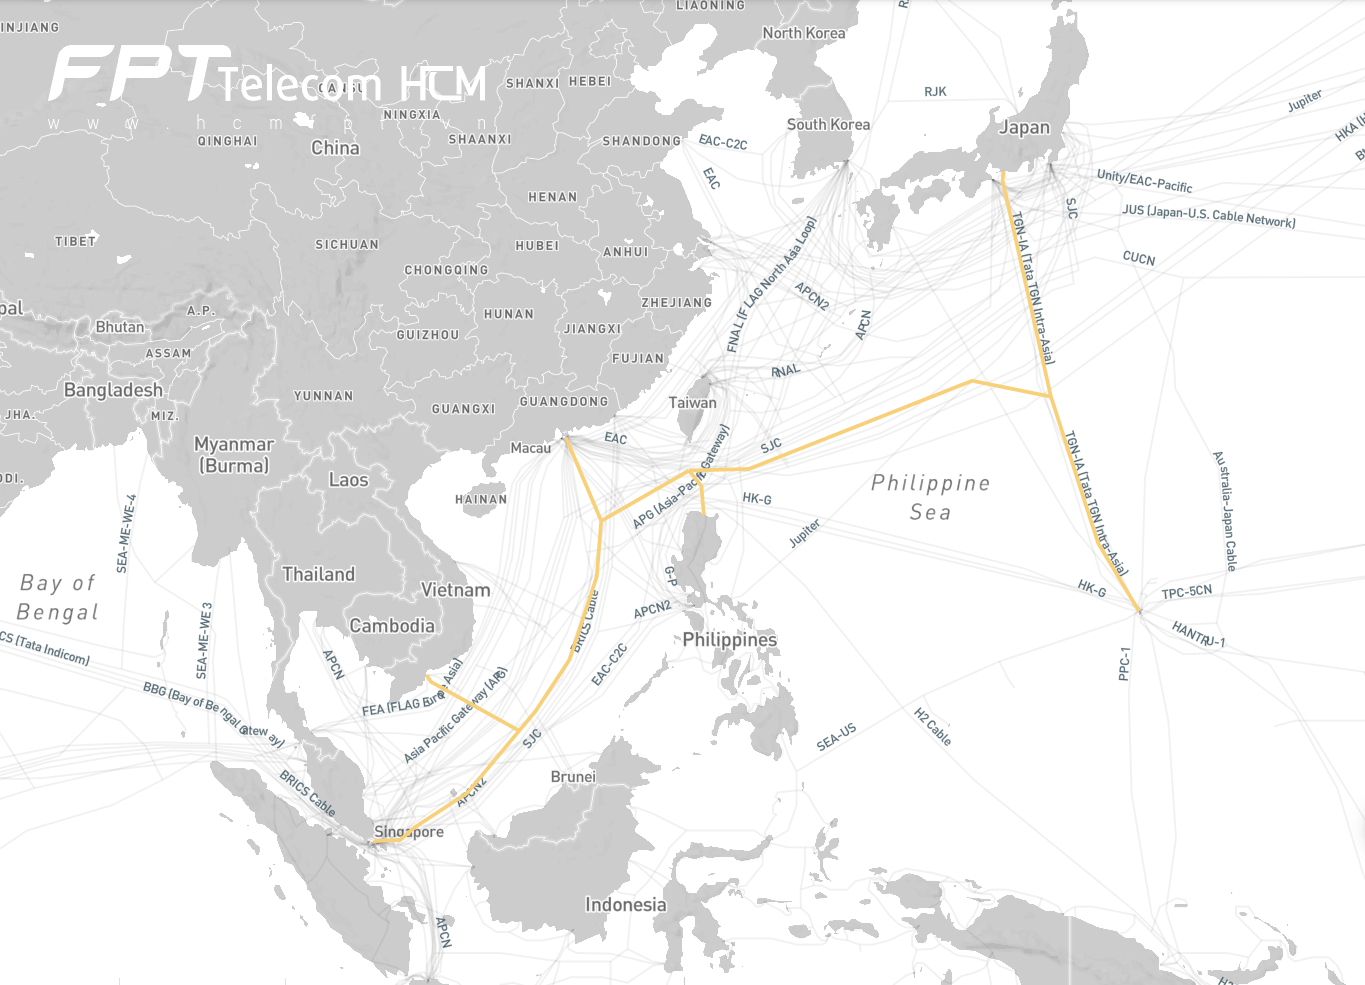 Cáp quang biển T-V-H (Thailand-Vietnam-Hong Kong)